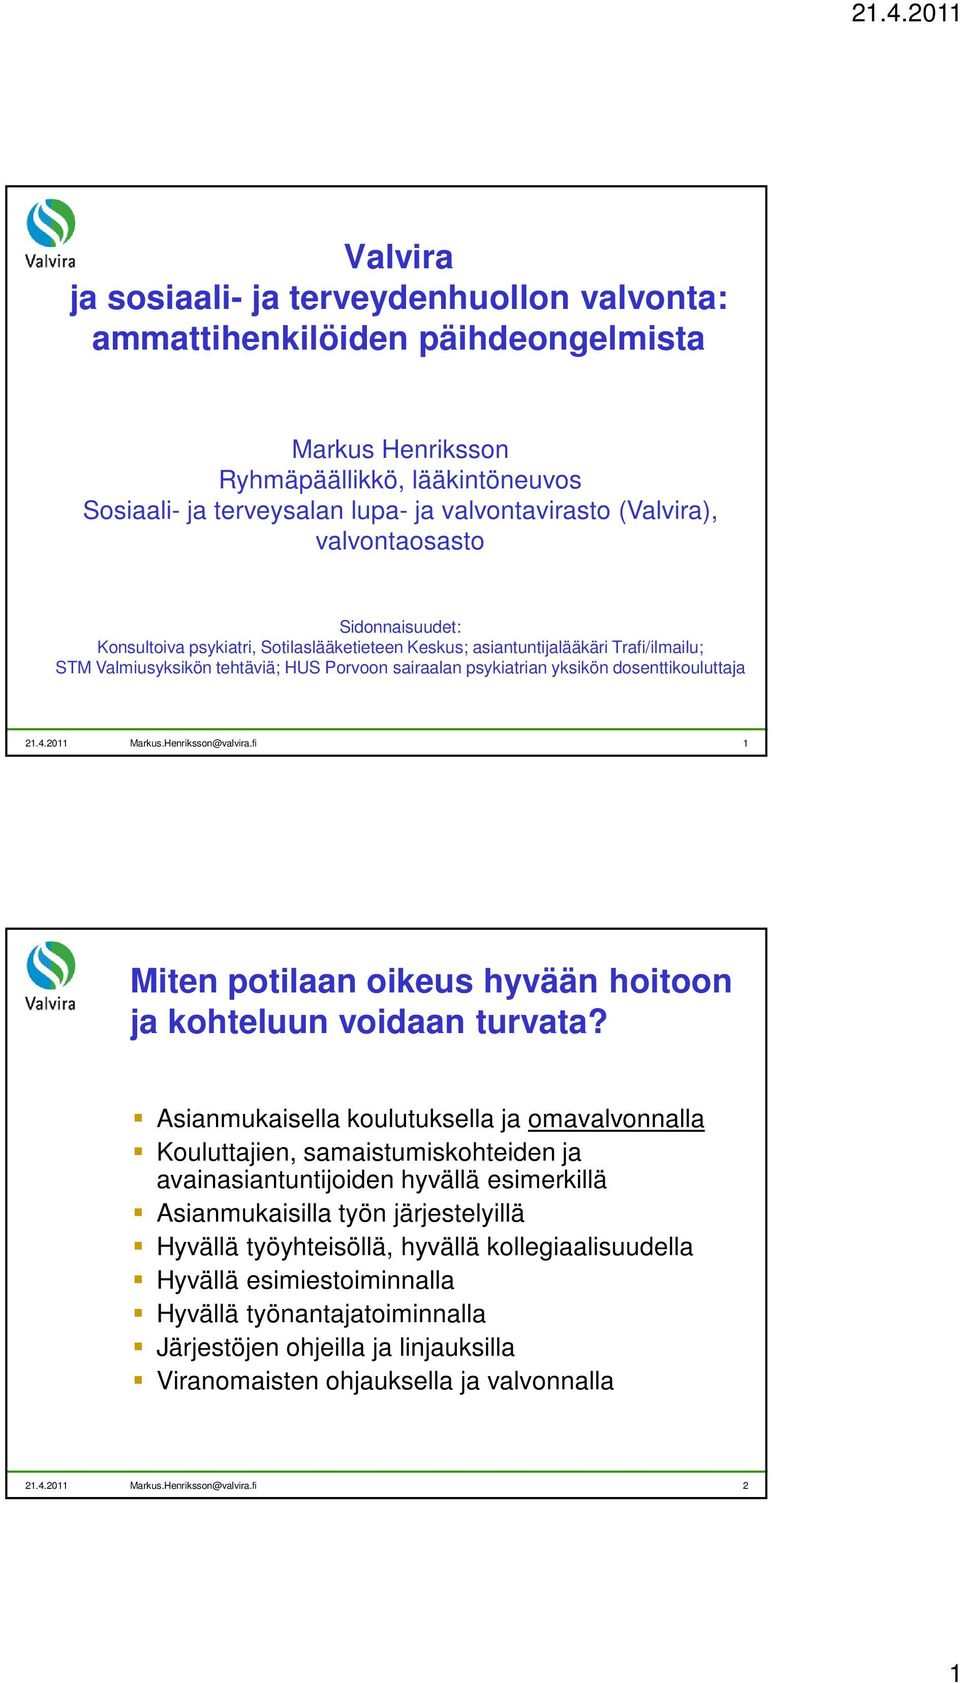 dosenttikouluttaja 21.4.2011 Markus.Henriksson@valvira.fi 1 Miten potilaan oikeus hyvään hoitoon ja kohteluun voidaan turvata?